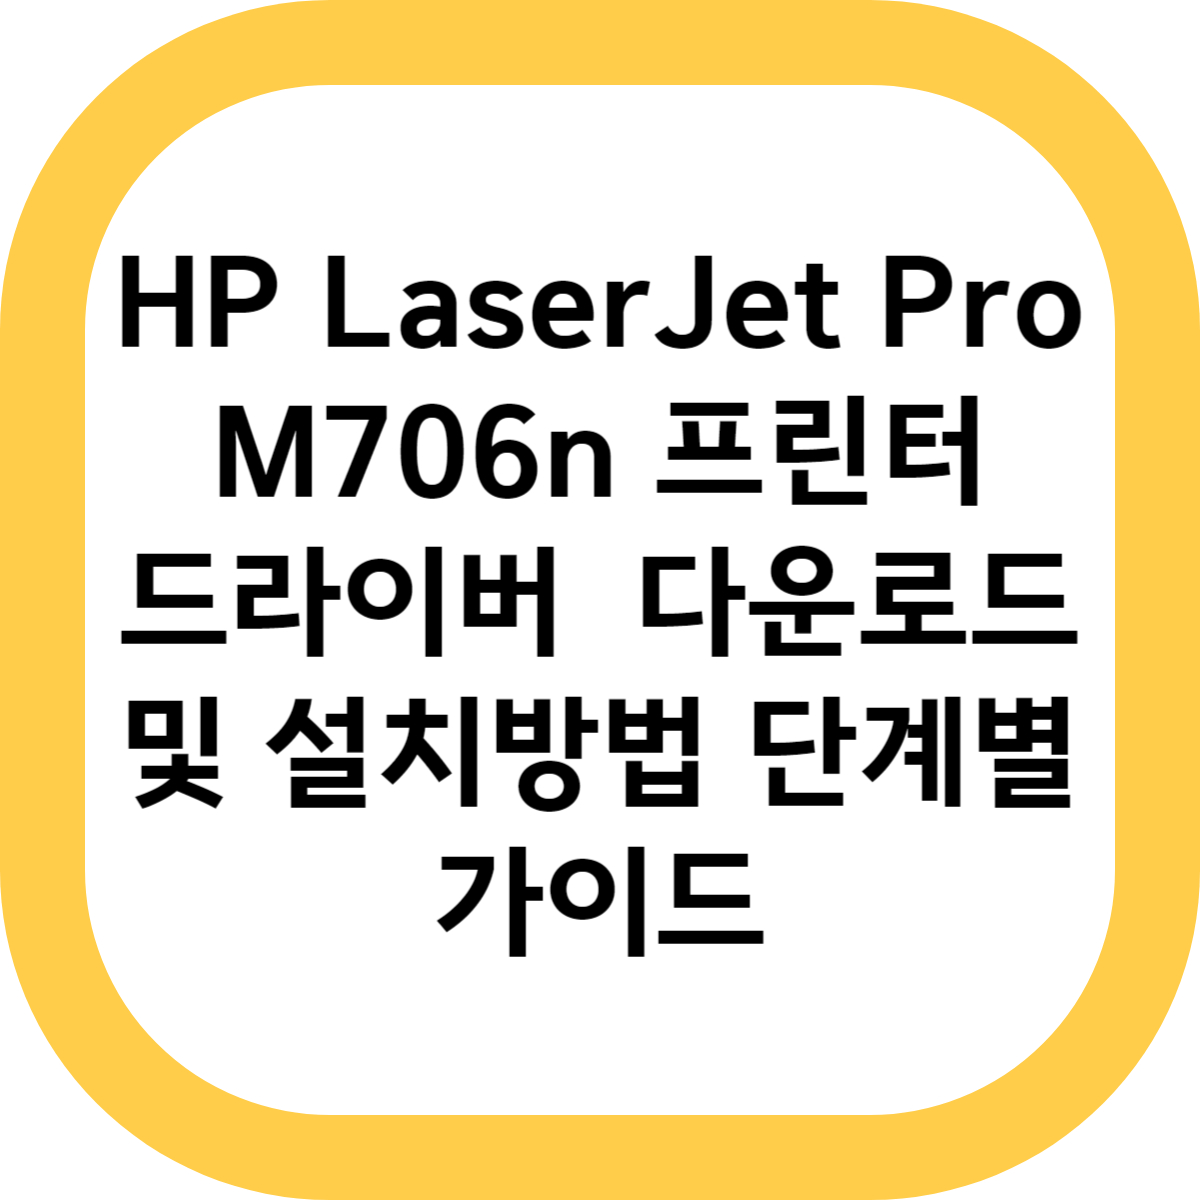 HP LaserJet Pro M706n 프린터 드라이버 다운로드 및 설치방법 단계별 가이드